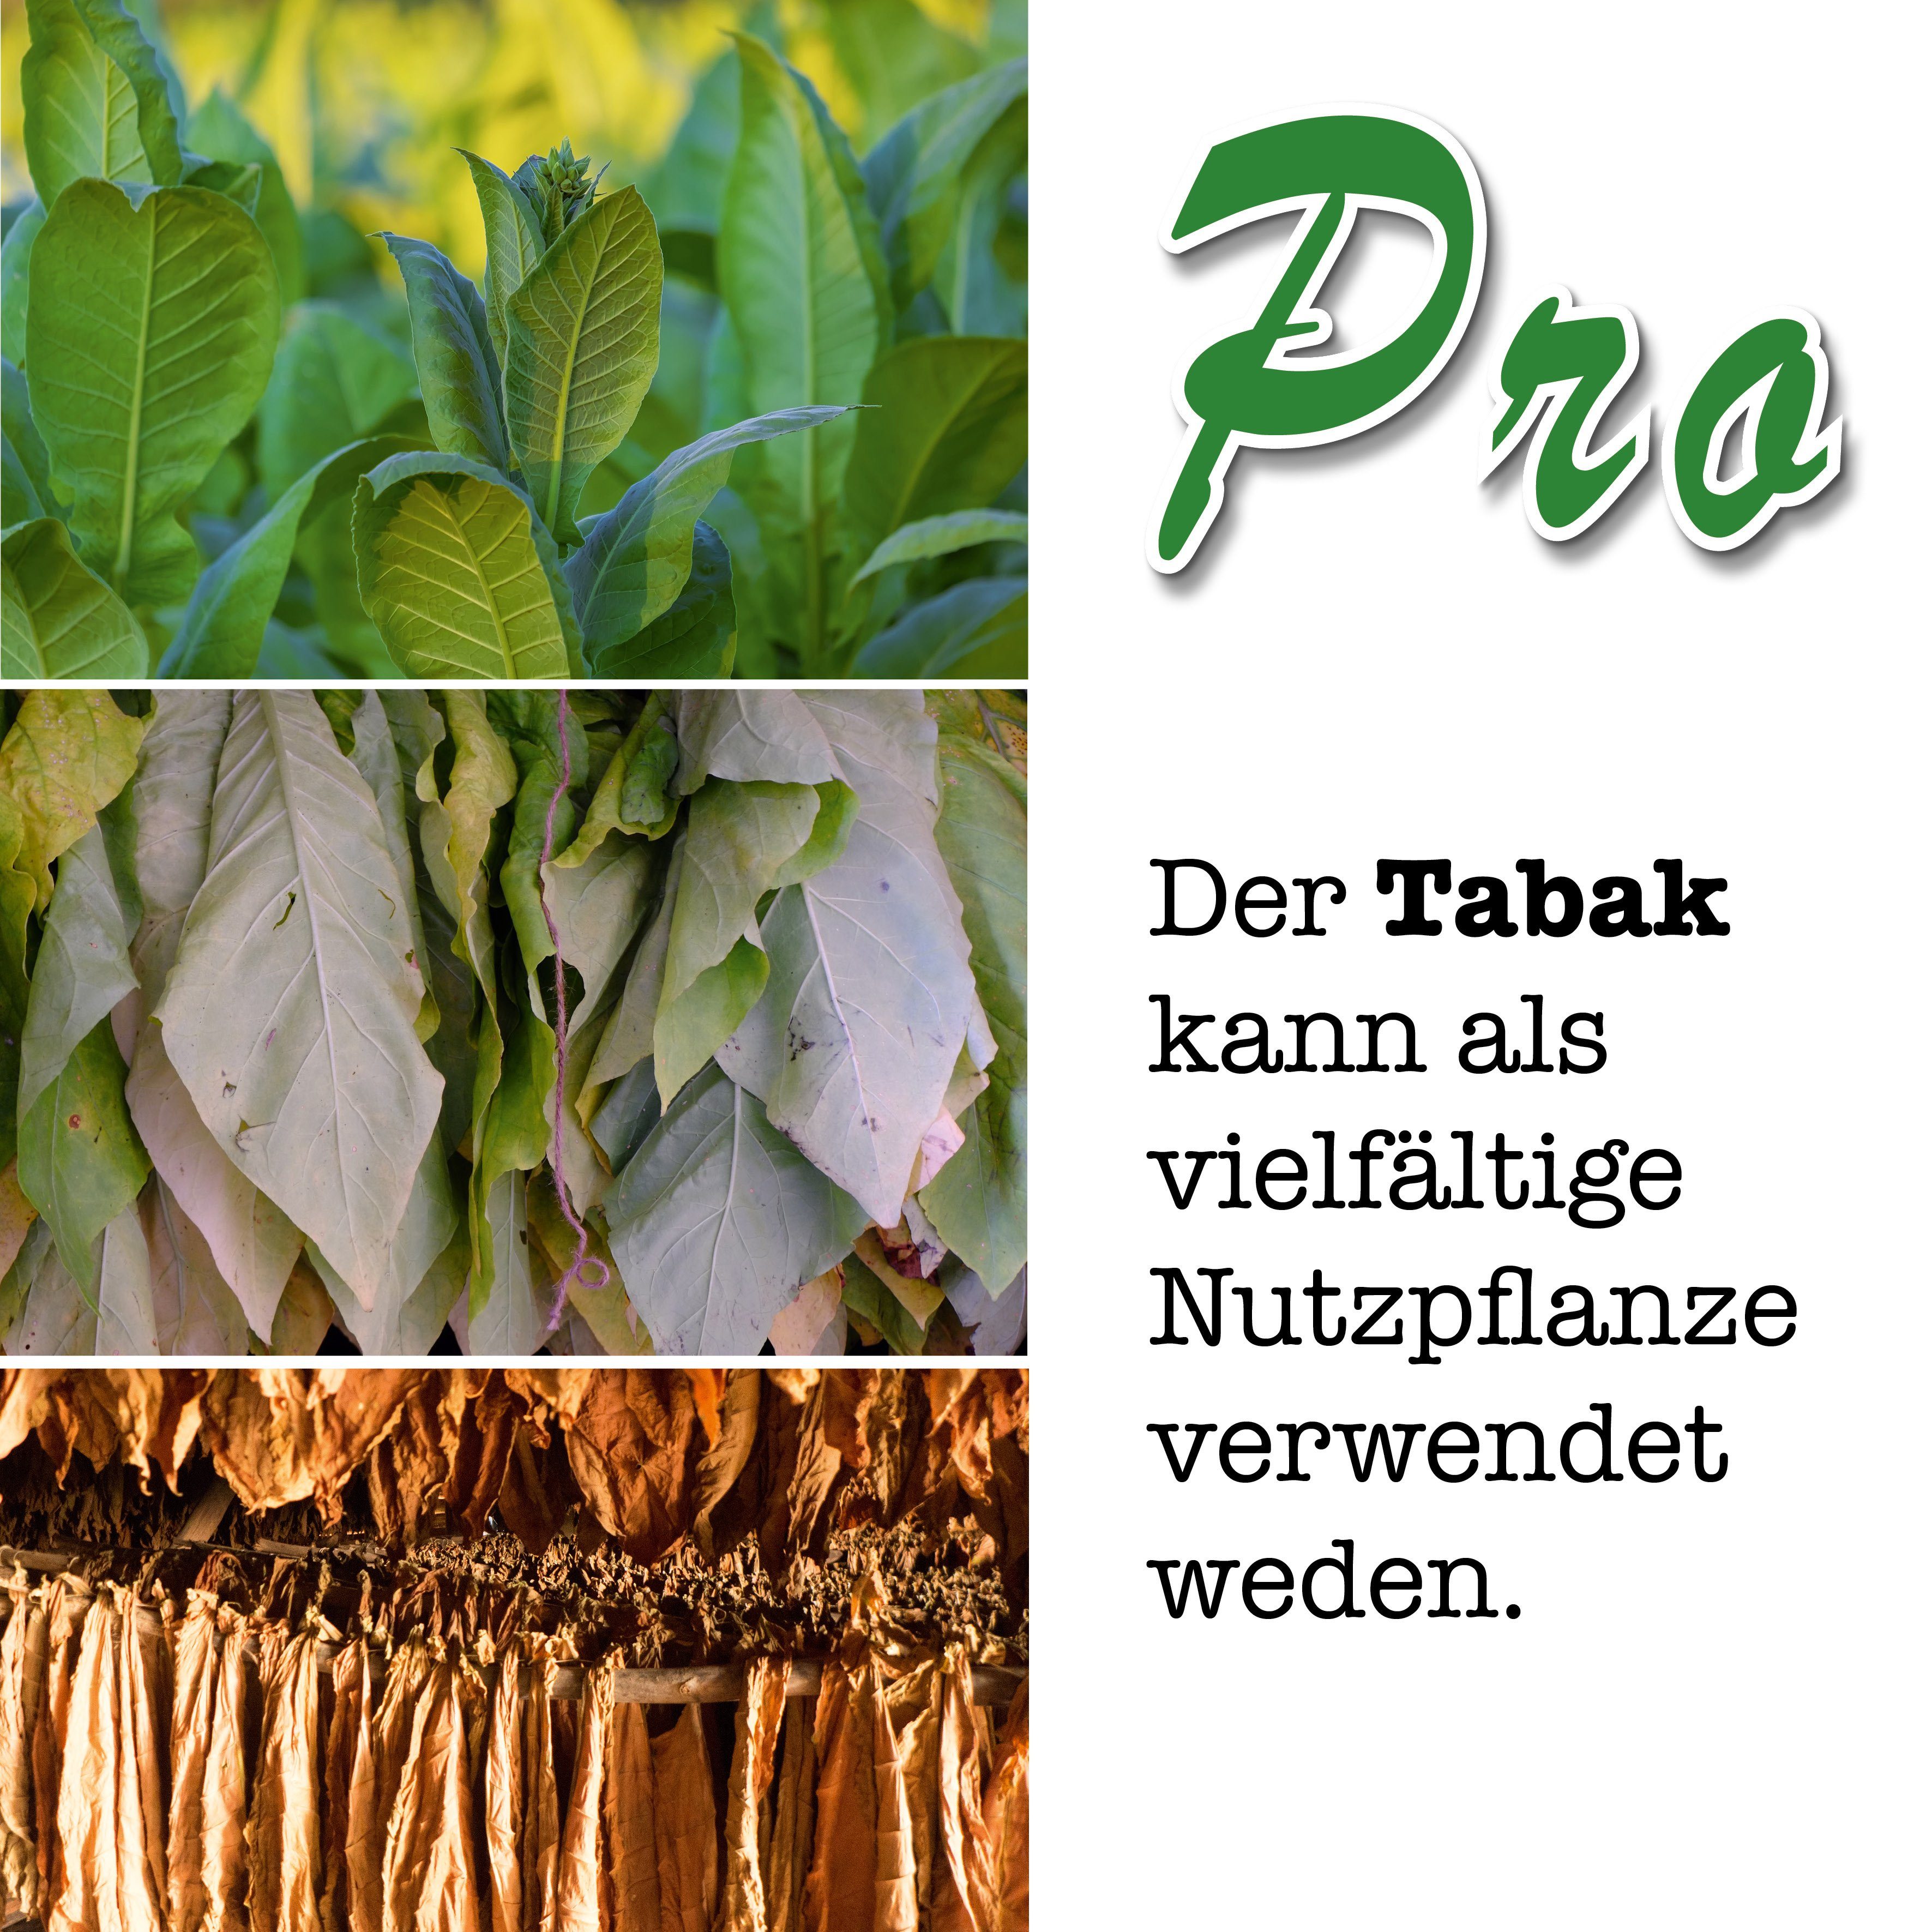 EIGENE Media Rauchtabak, BRO Anzuchtset ZÜCHTE Pflanze - Social Gestecke aus mit Tabak Deine growbro, Bekannt